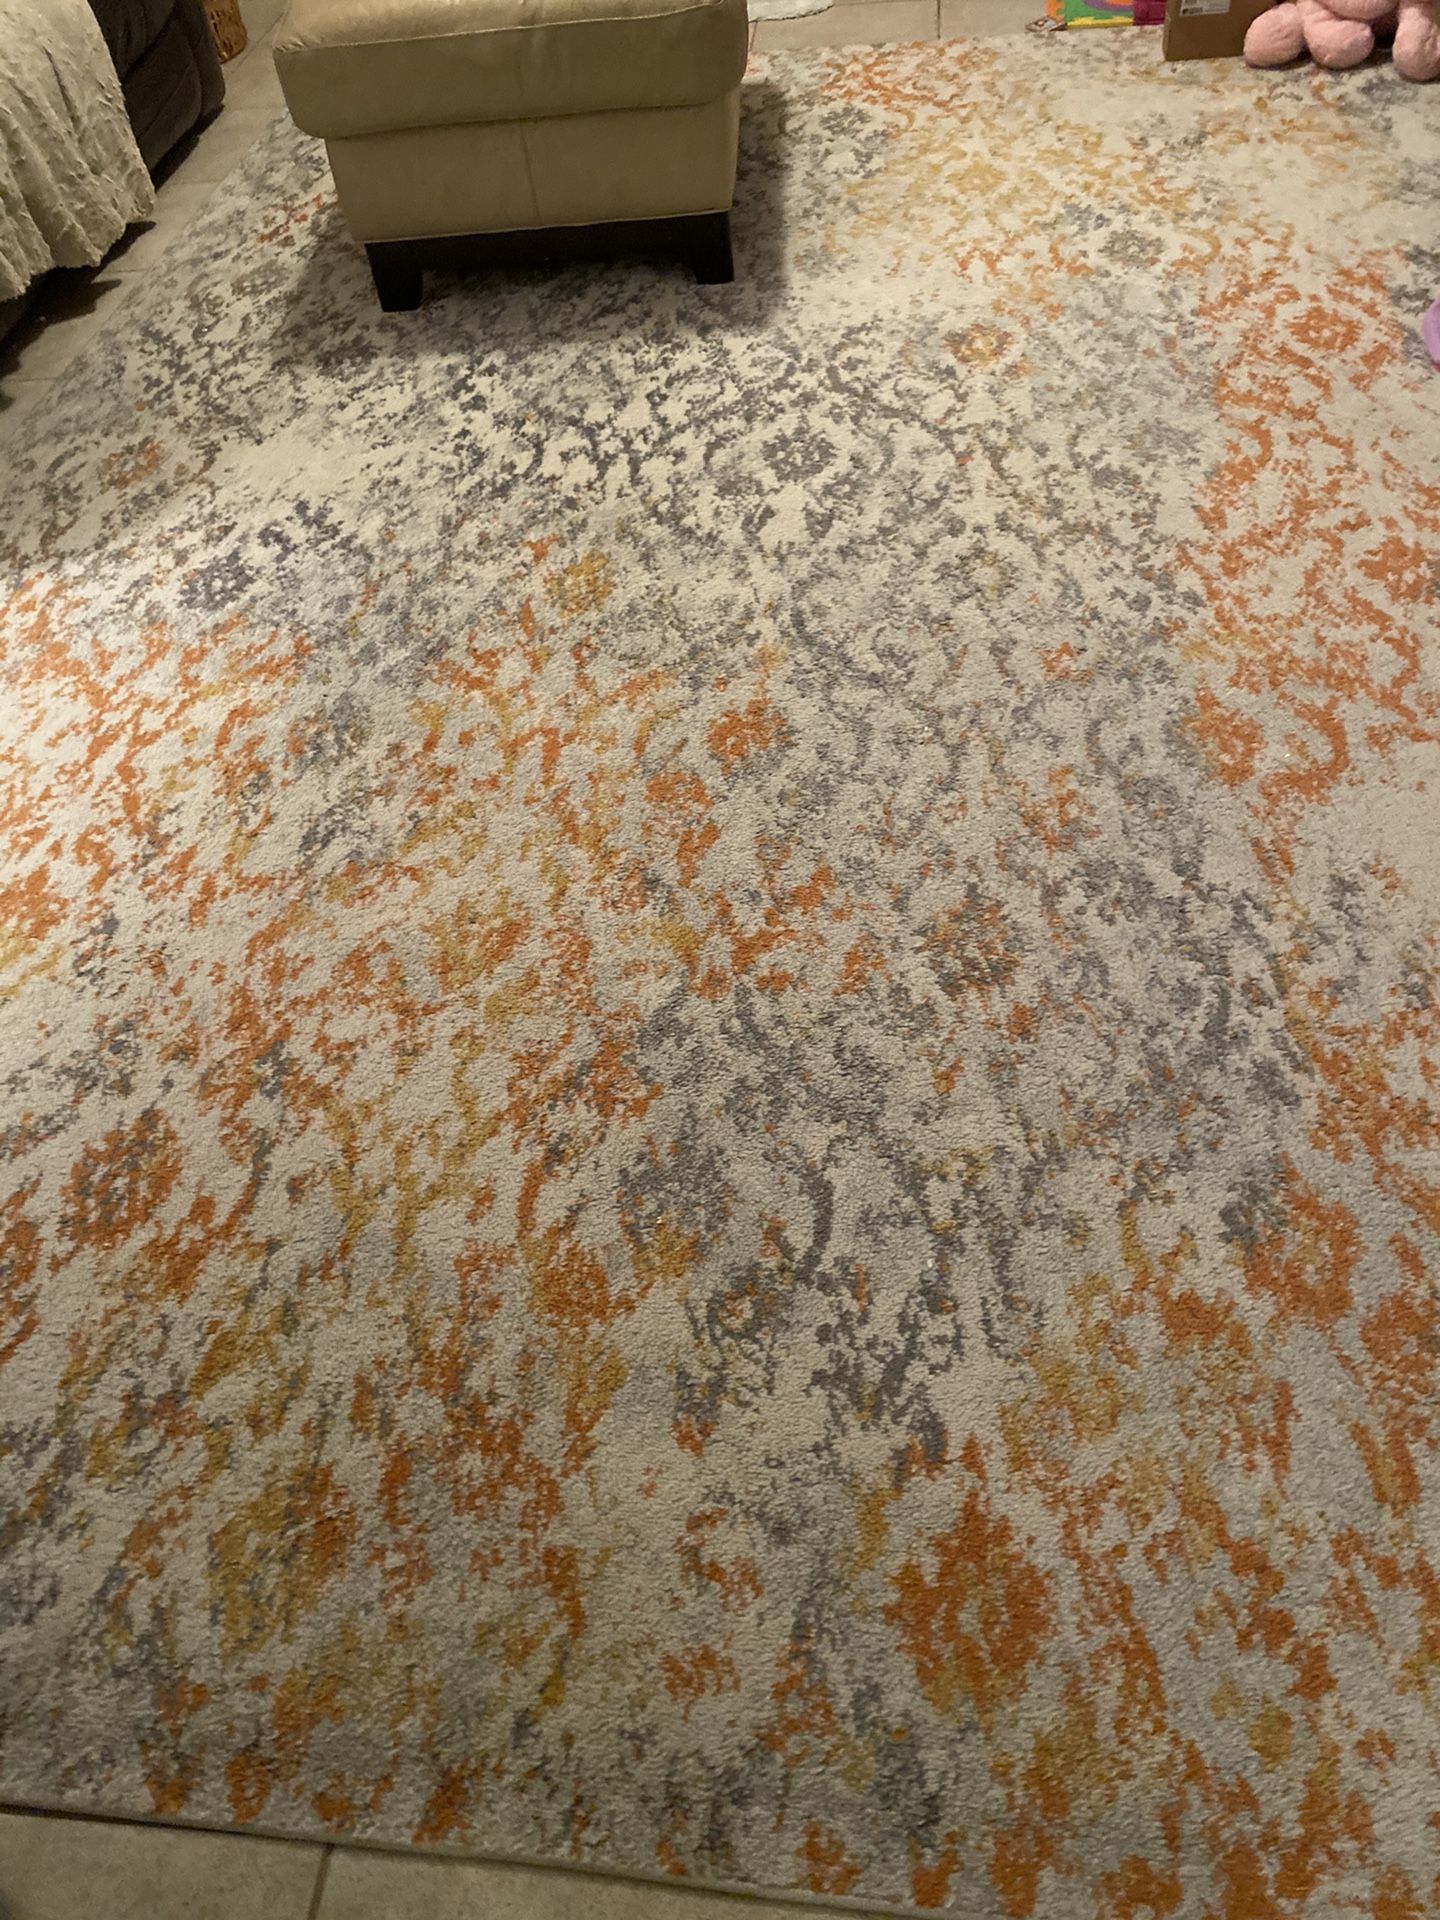 9x12 area rug